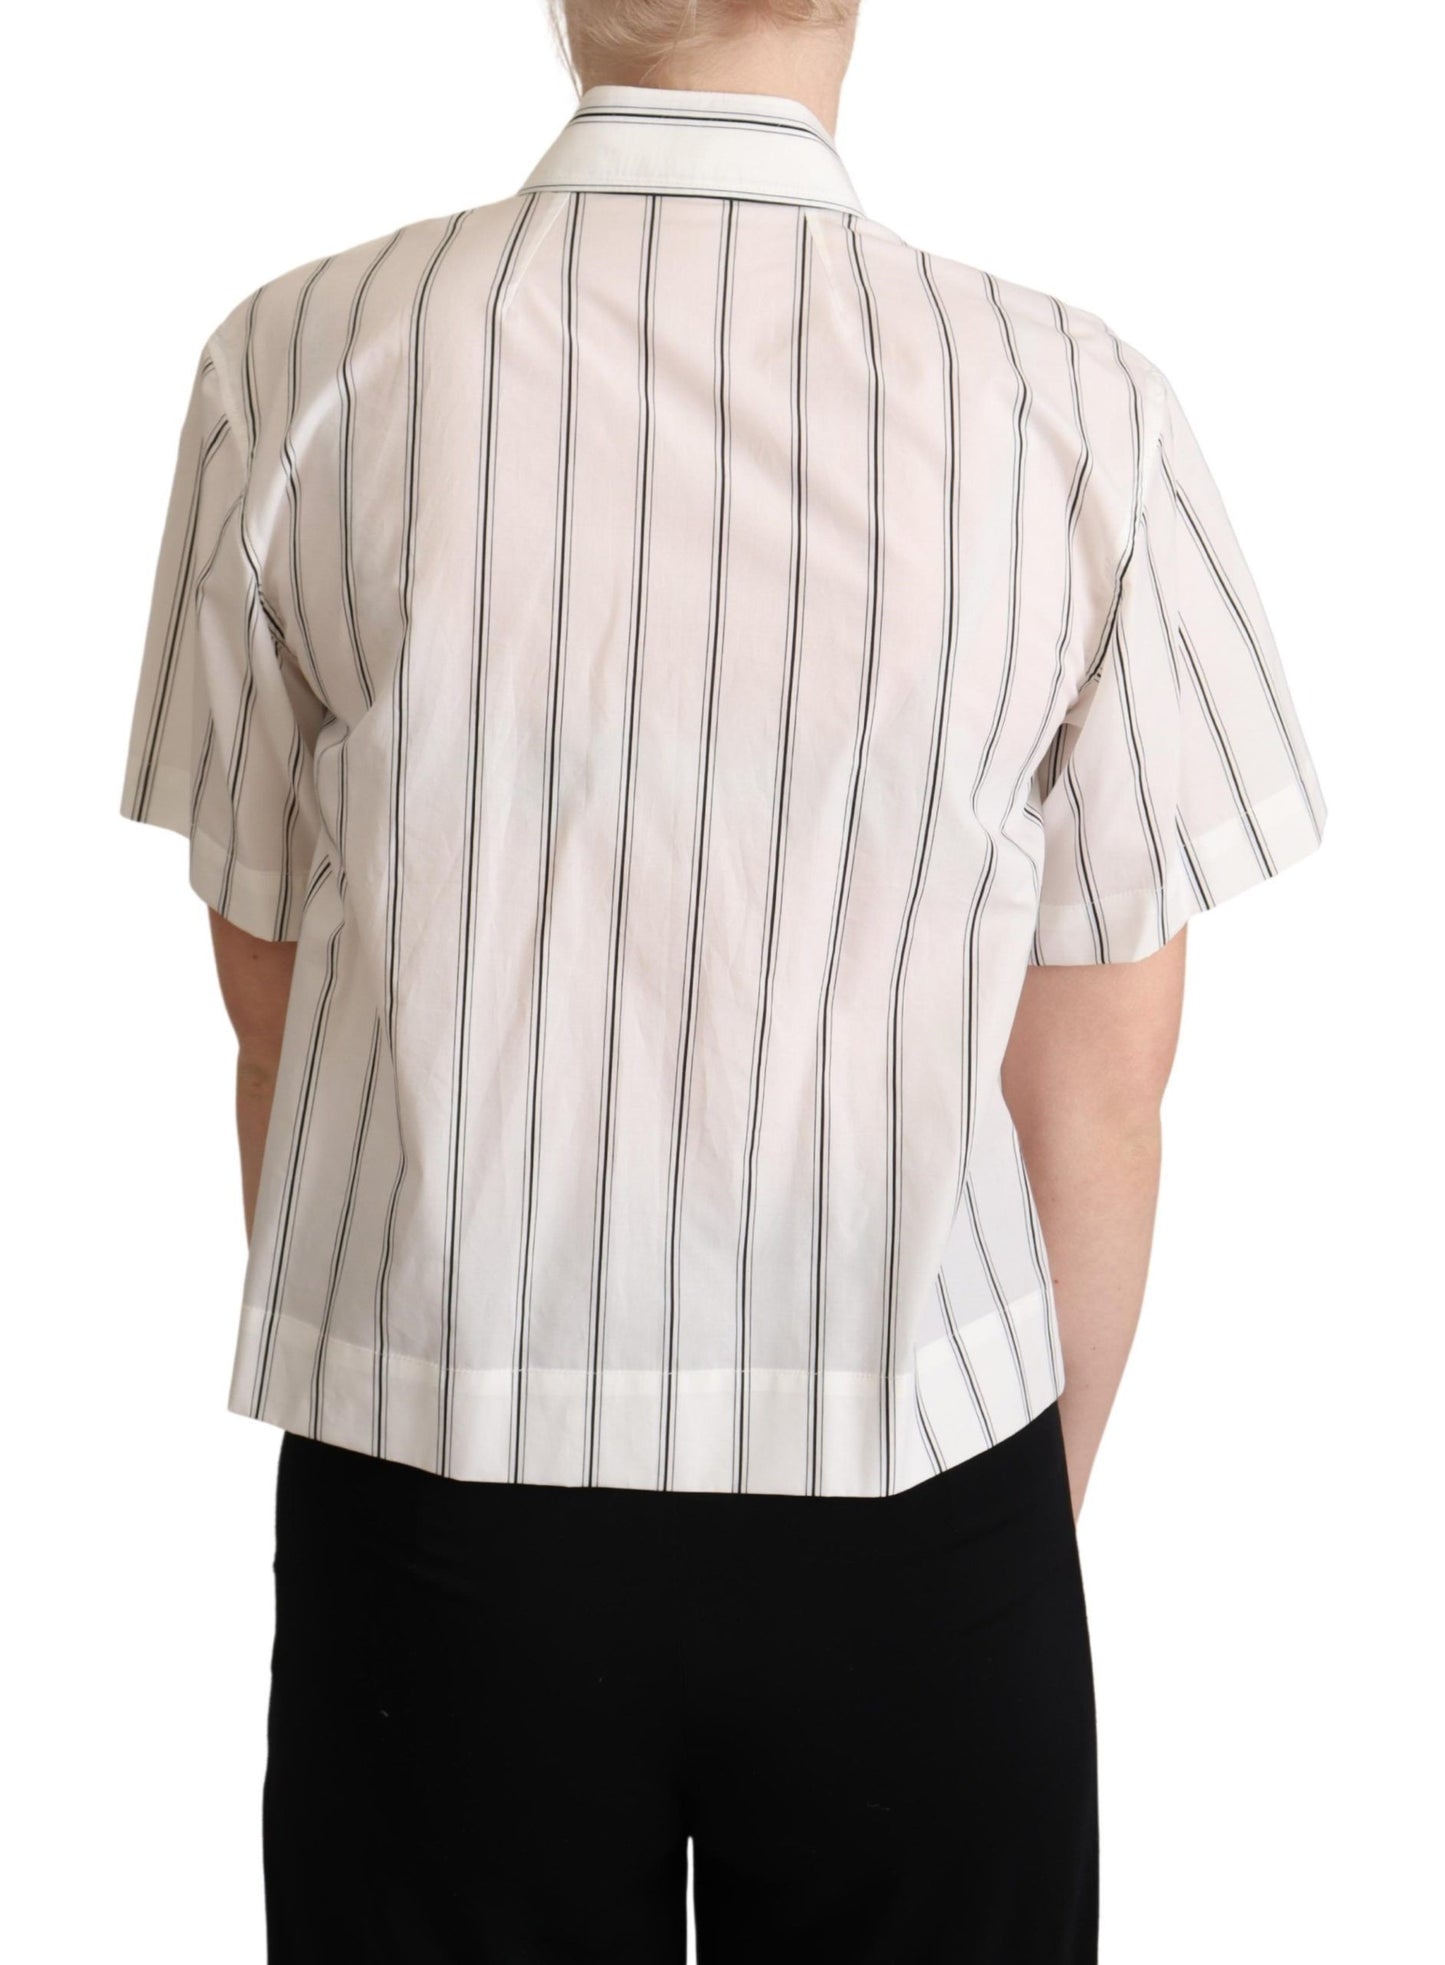 Elegant Striped Cotton Polo Top